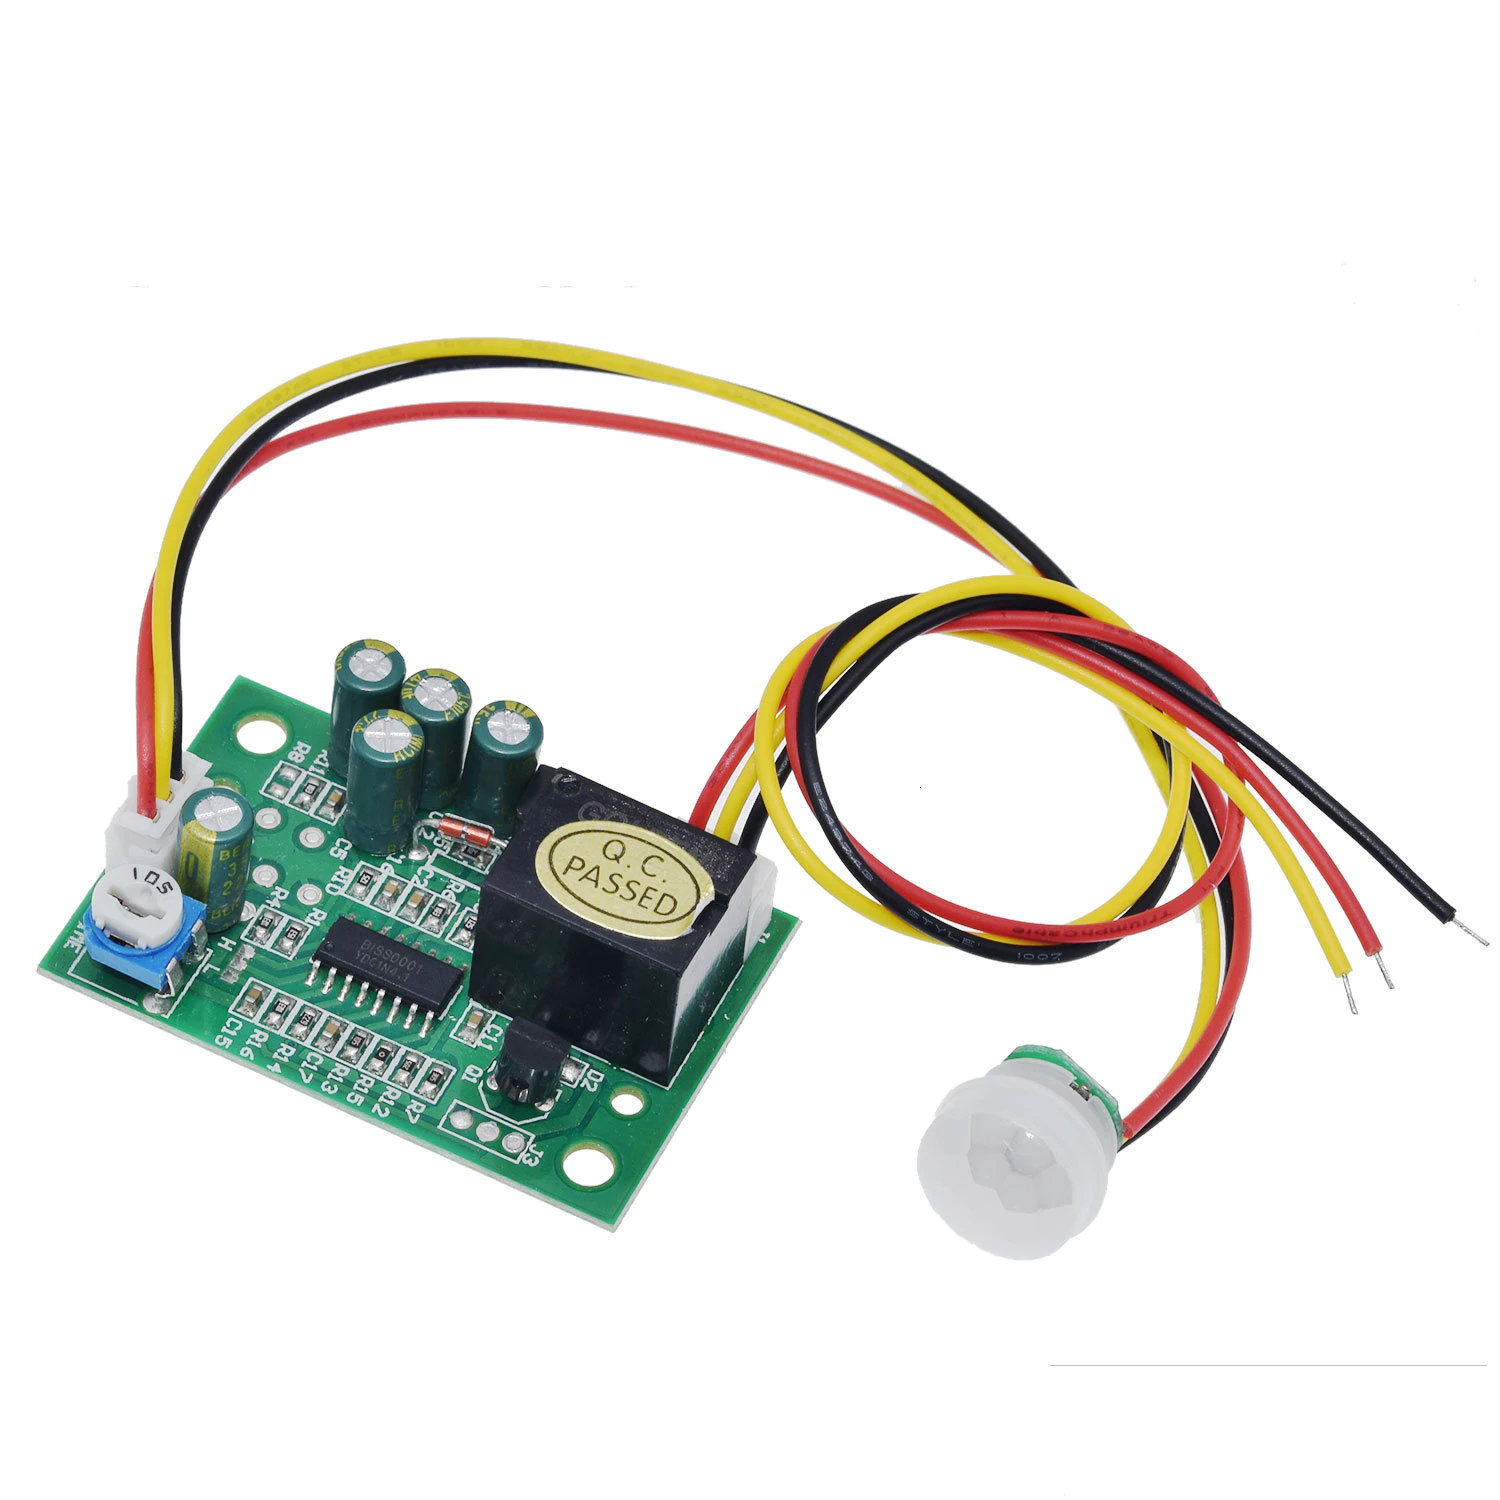 Comprar Interruptor de Sensor PIR, Detector de movimiento, interruptor de  lámpara de inducción infrarroja IR, 220V, 110V